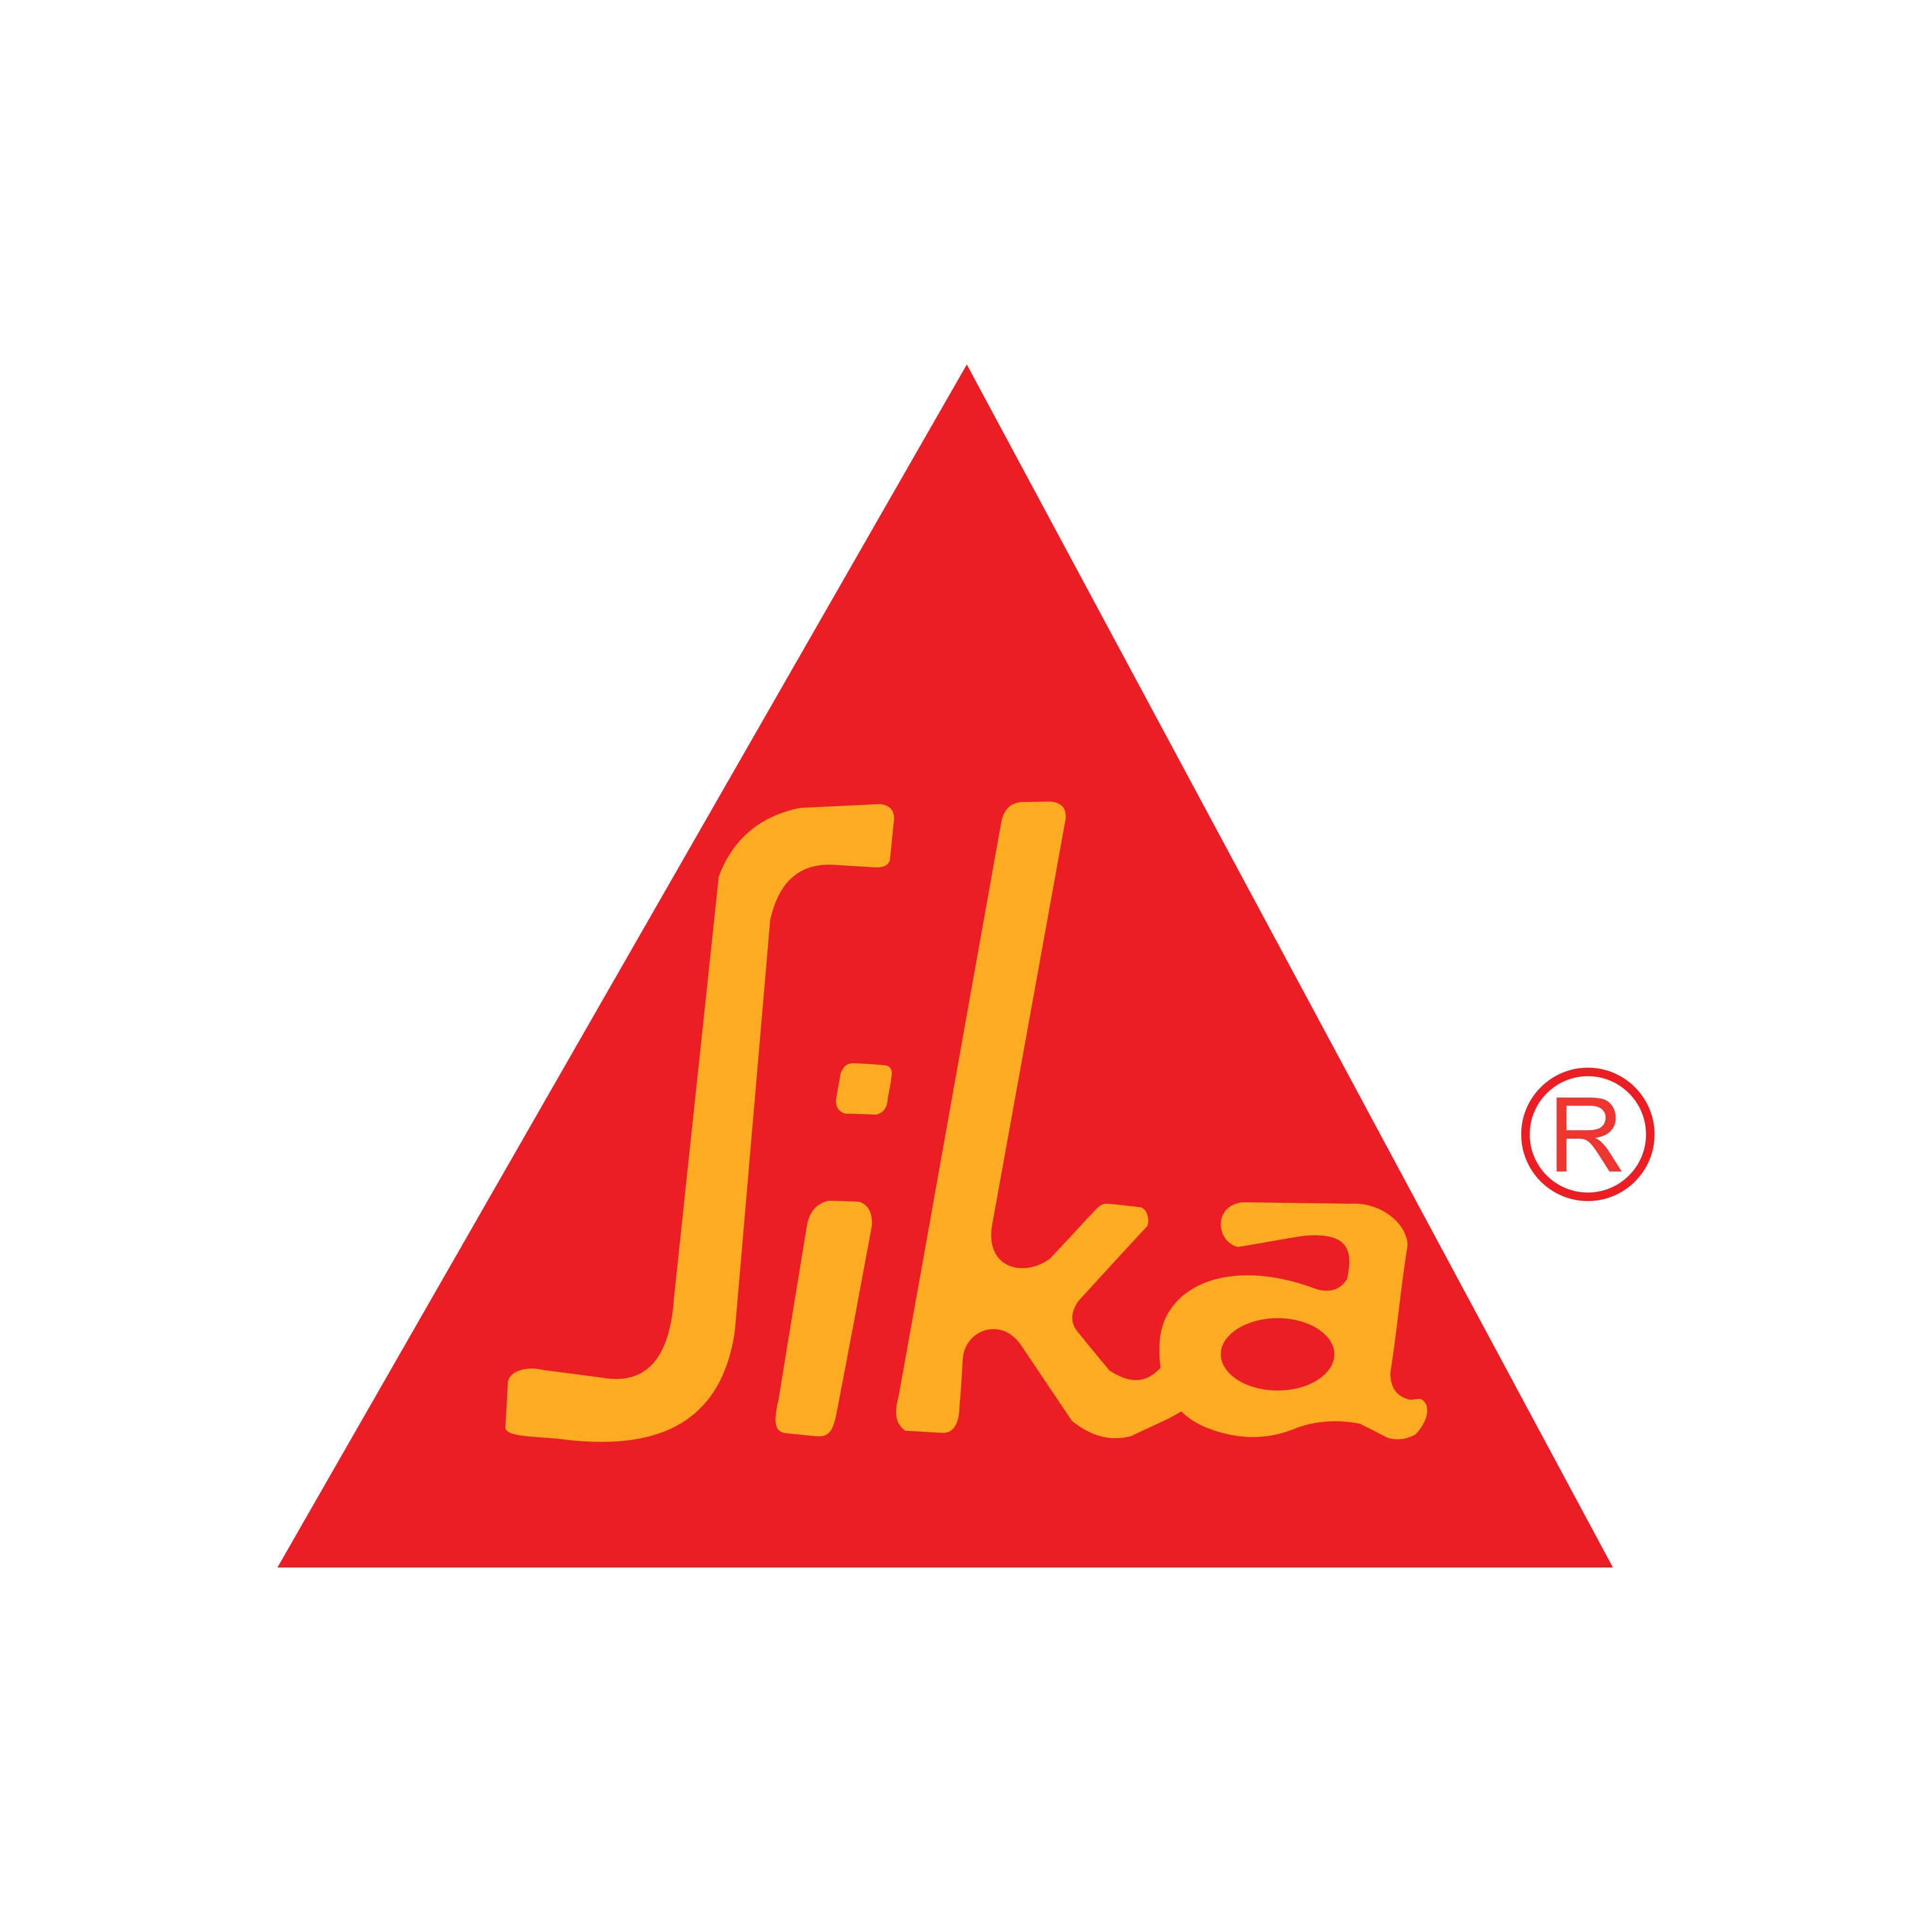 sika logo 0 - Sika Logo